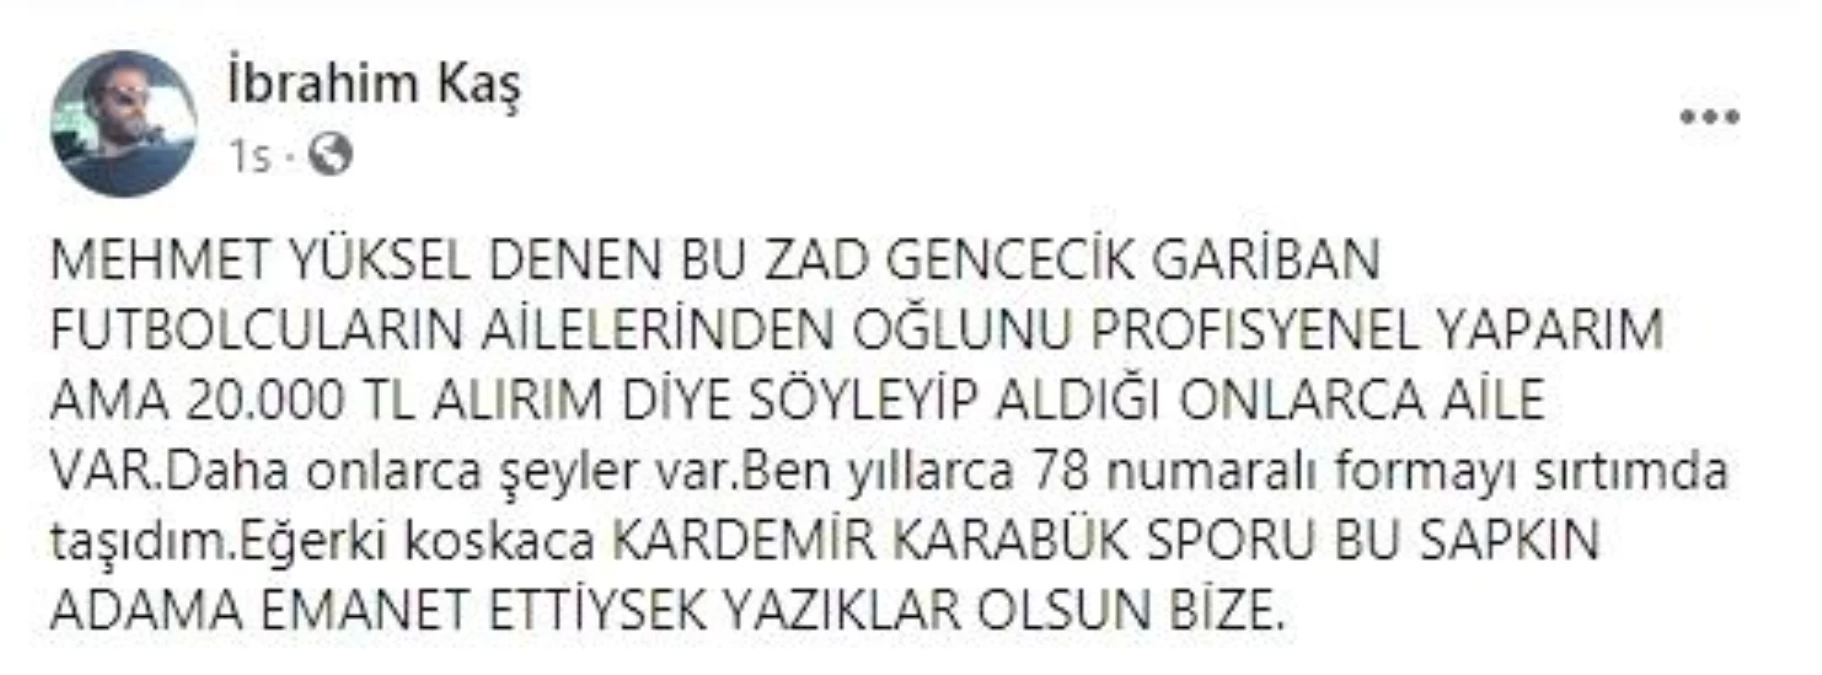 Son dakika haberleri... Karabükspor Başkanı Mehmet Yüksel\'den futbolcusuna küfürlü mesaj